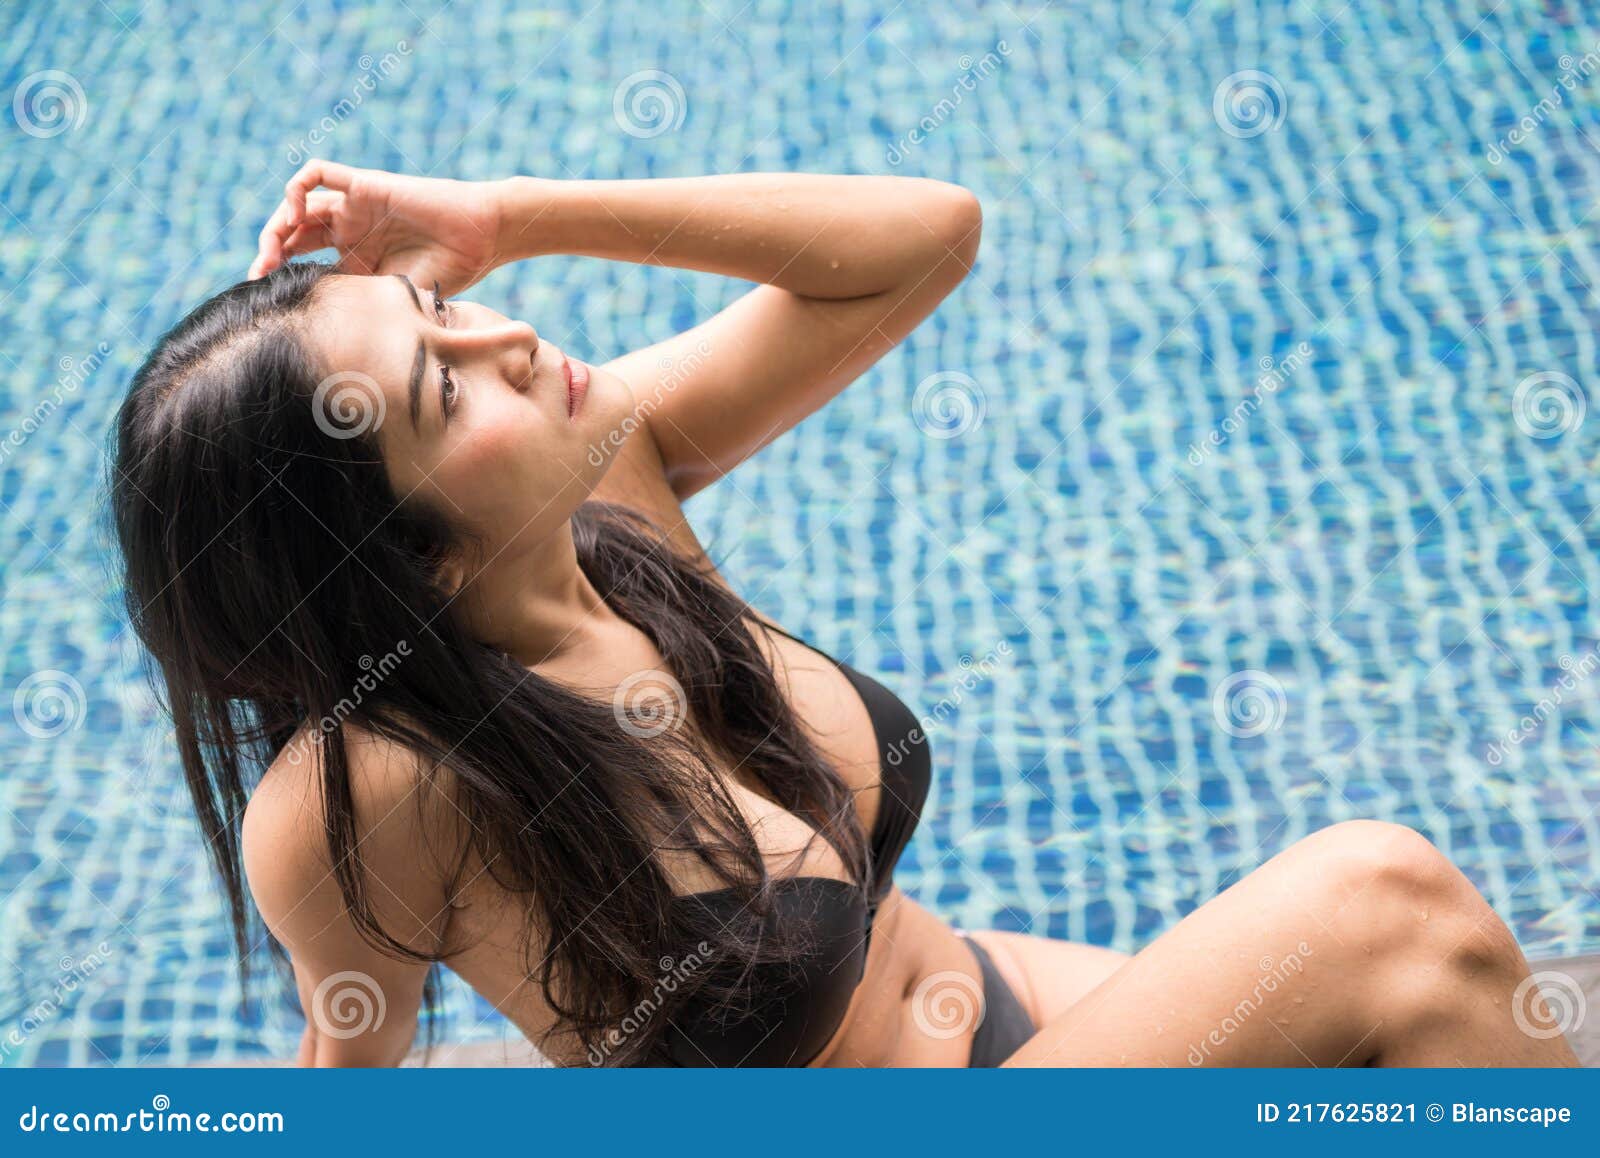 Mulher Sexy Fica Bronzeada Ao Tomar Sol Na Piscina No Verão Imagem de Stock 